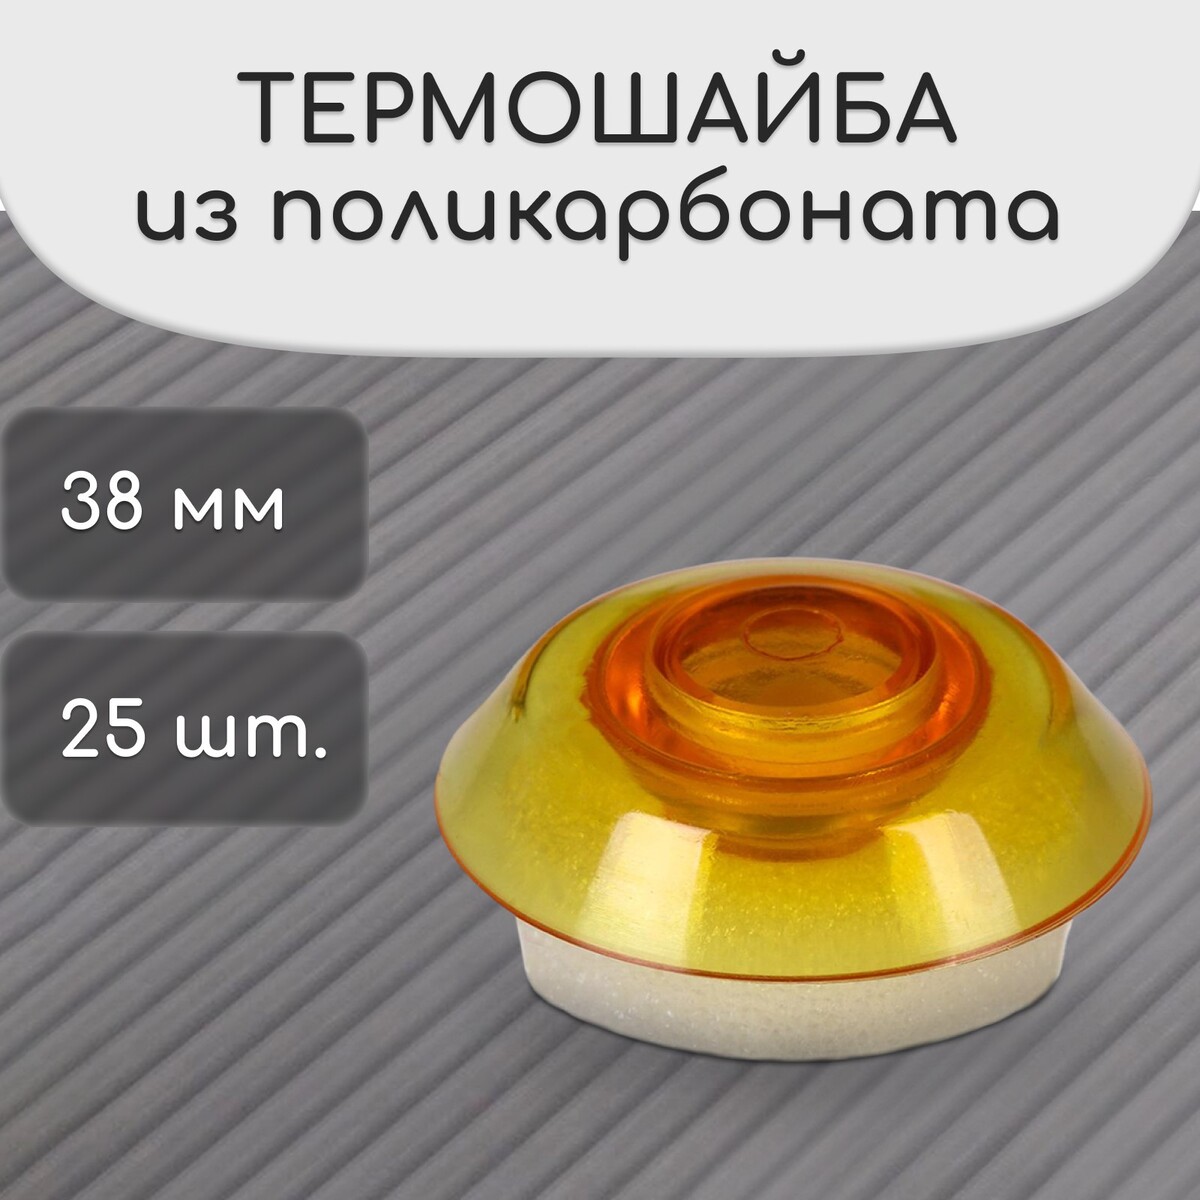 Термошайба из поликарбоната, d = 38 мм, уф-защита, оранжевая, набор 25 шт. No brand, цвет оранжевый